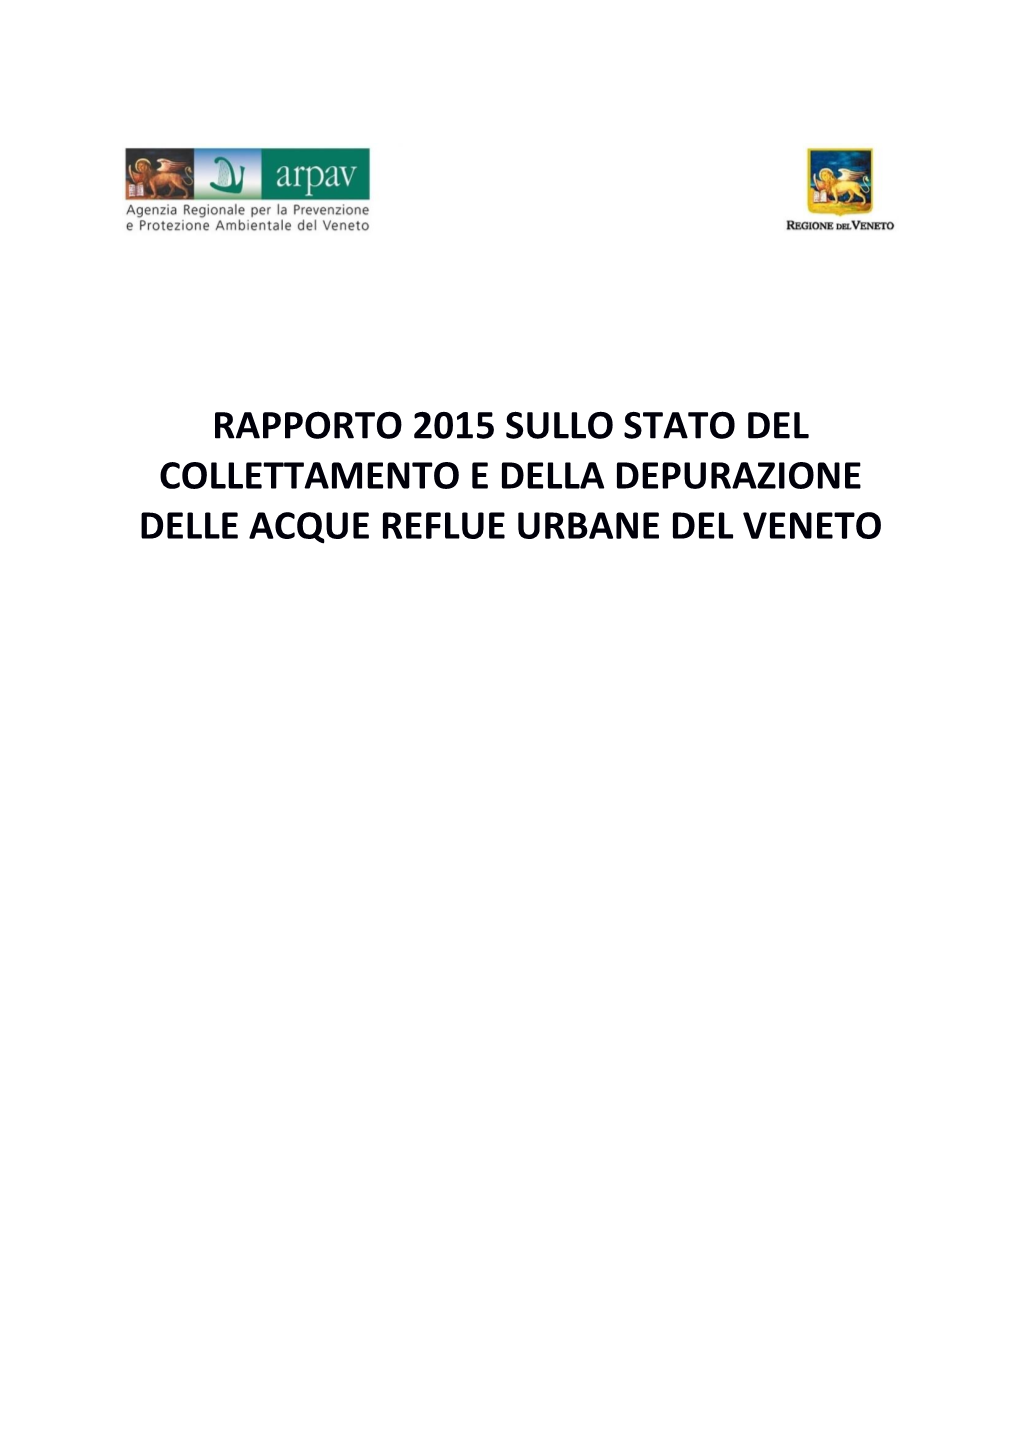 Rapporto 2015 Sullo Stato Del Collettamento E Della Depurazione Delle Acque Reflue Urbane Del Veneto